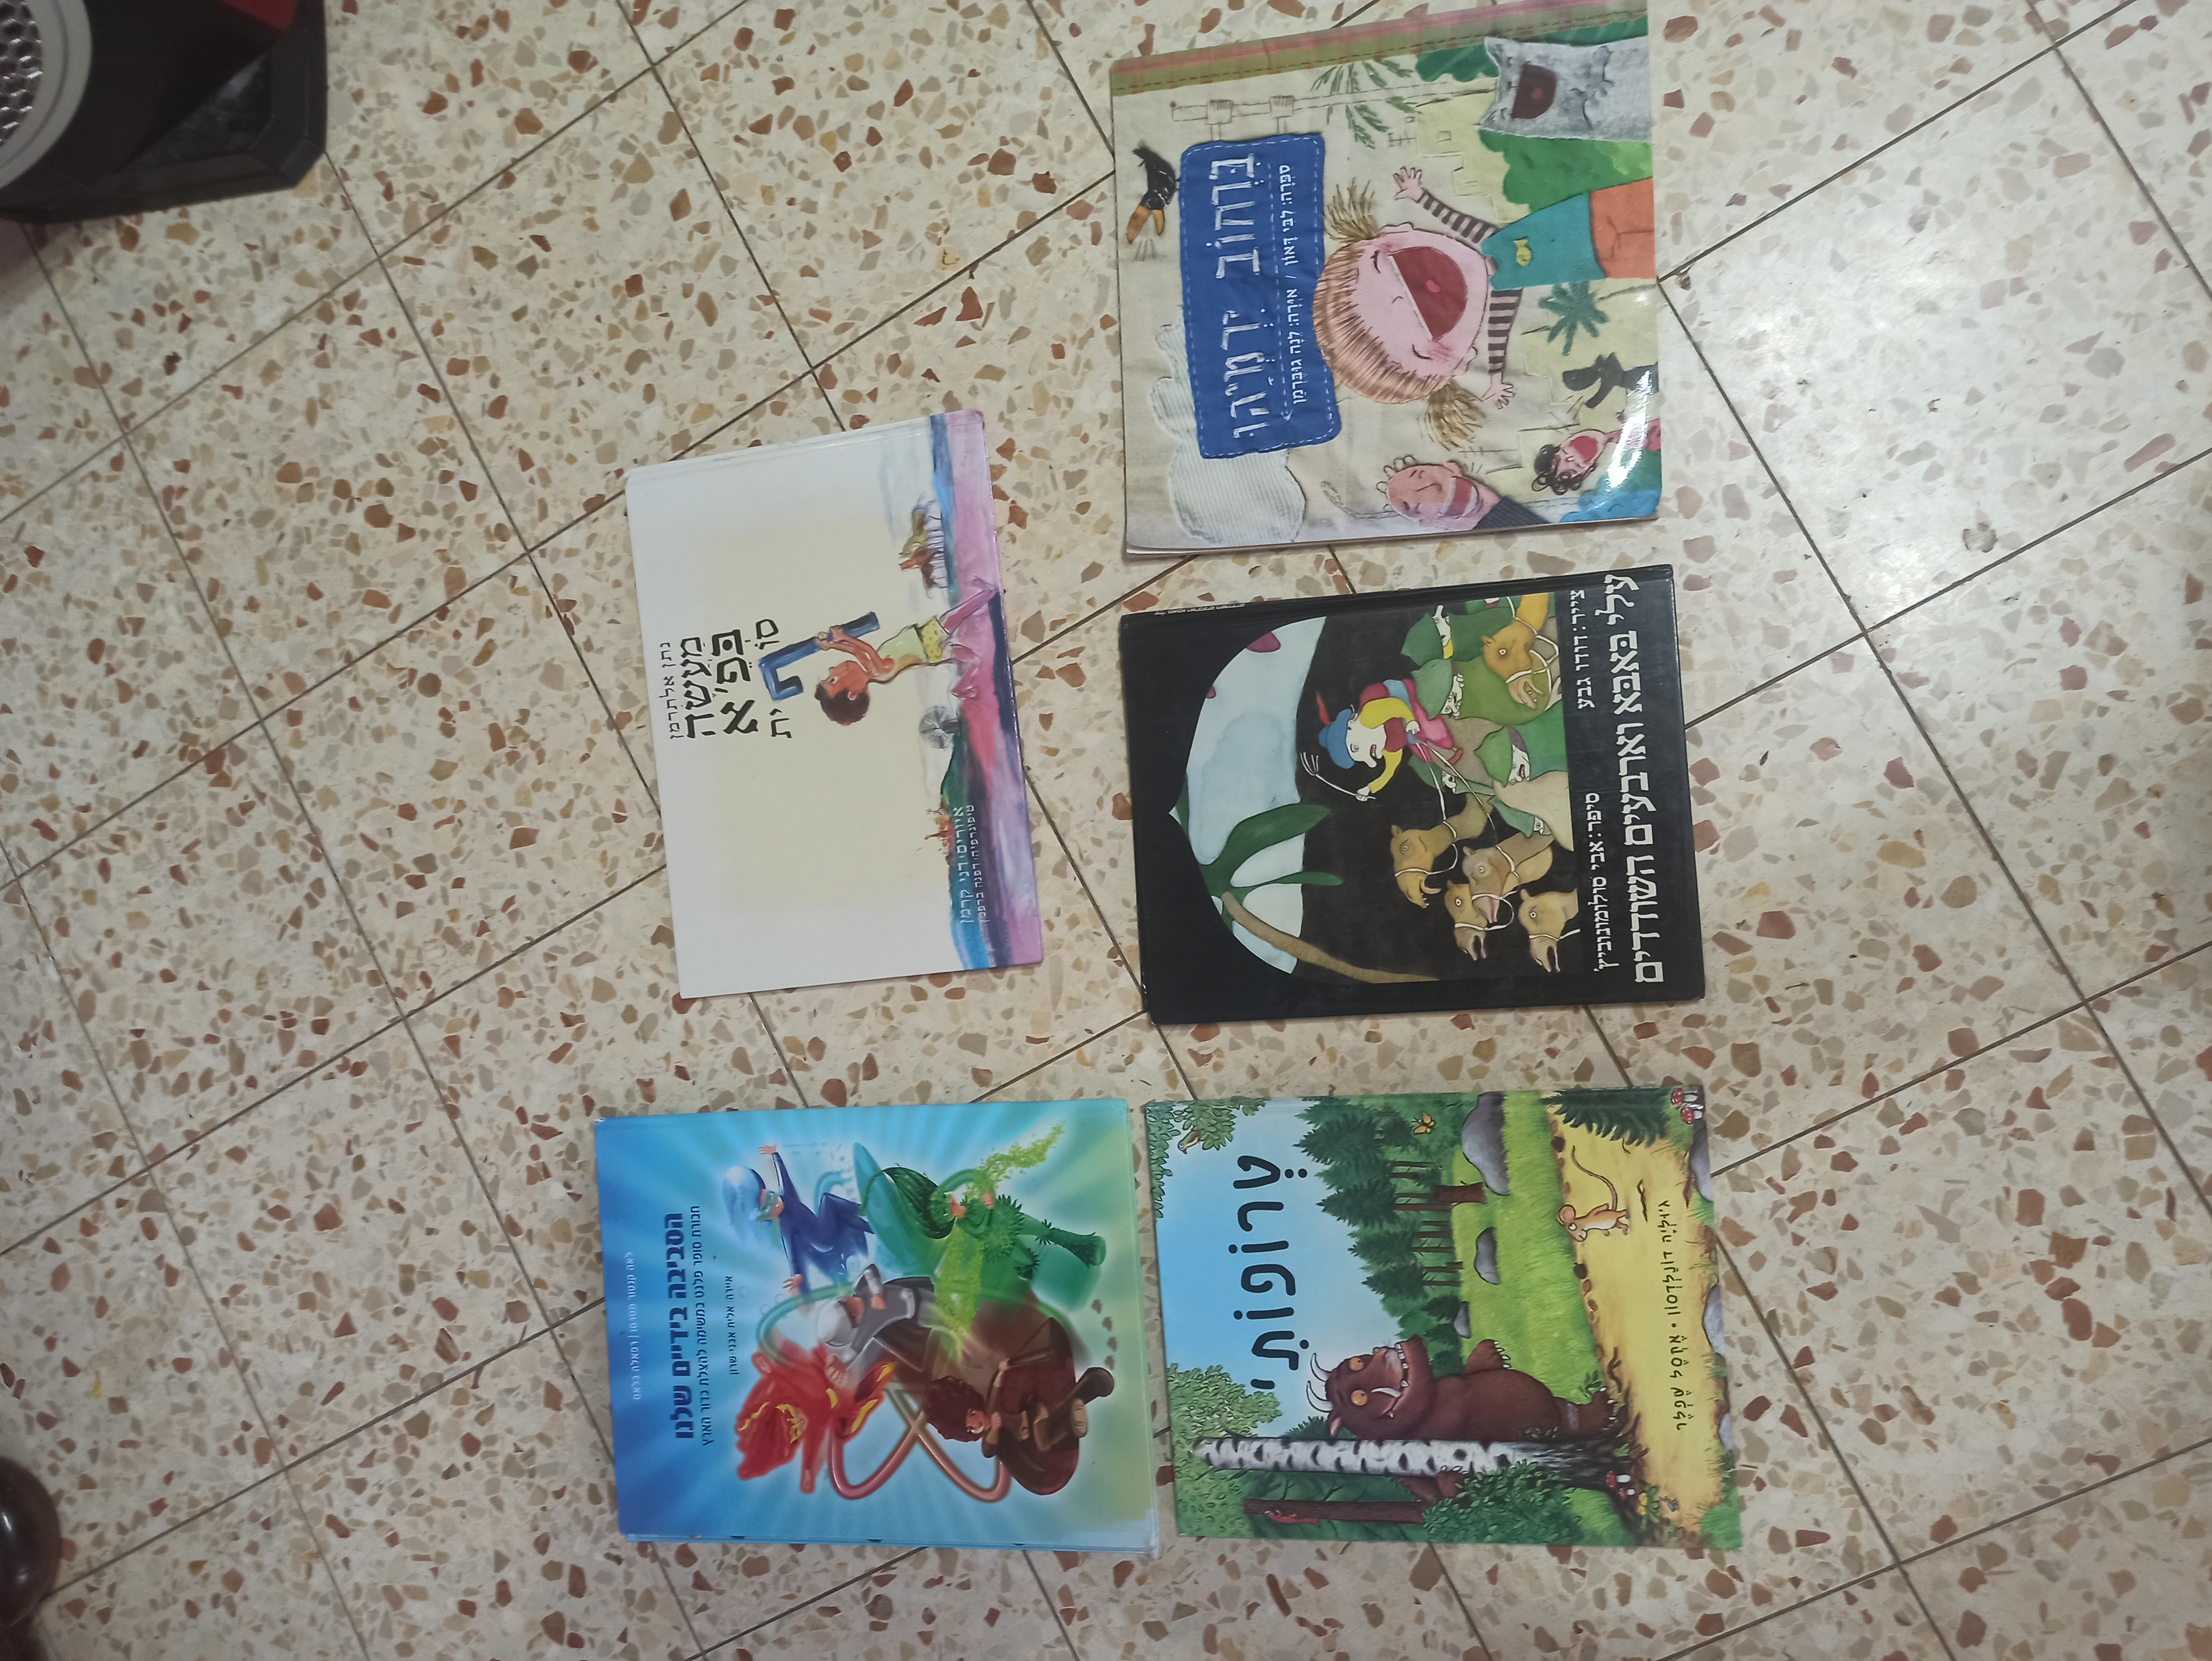 תמונה 1 ,ספרים שונים למכירה ביבנה לתינוק ולילד  ספרי ילדים